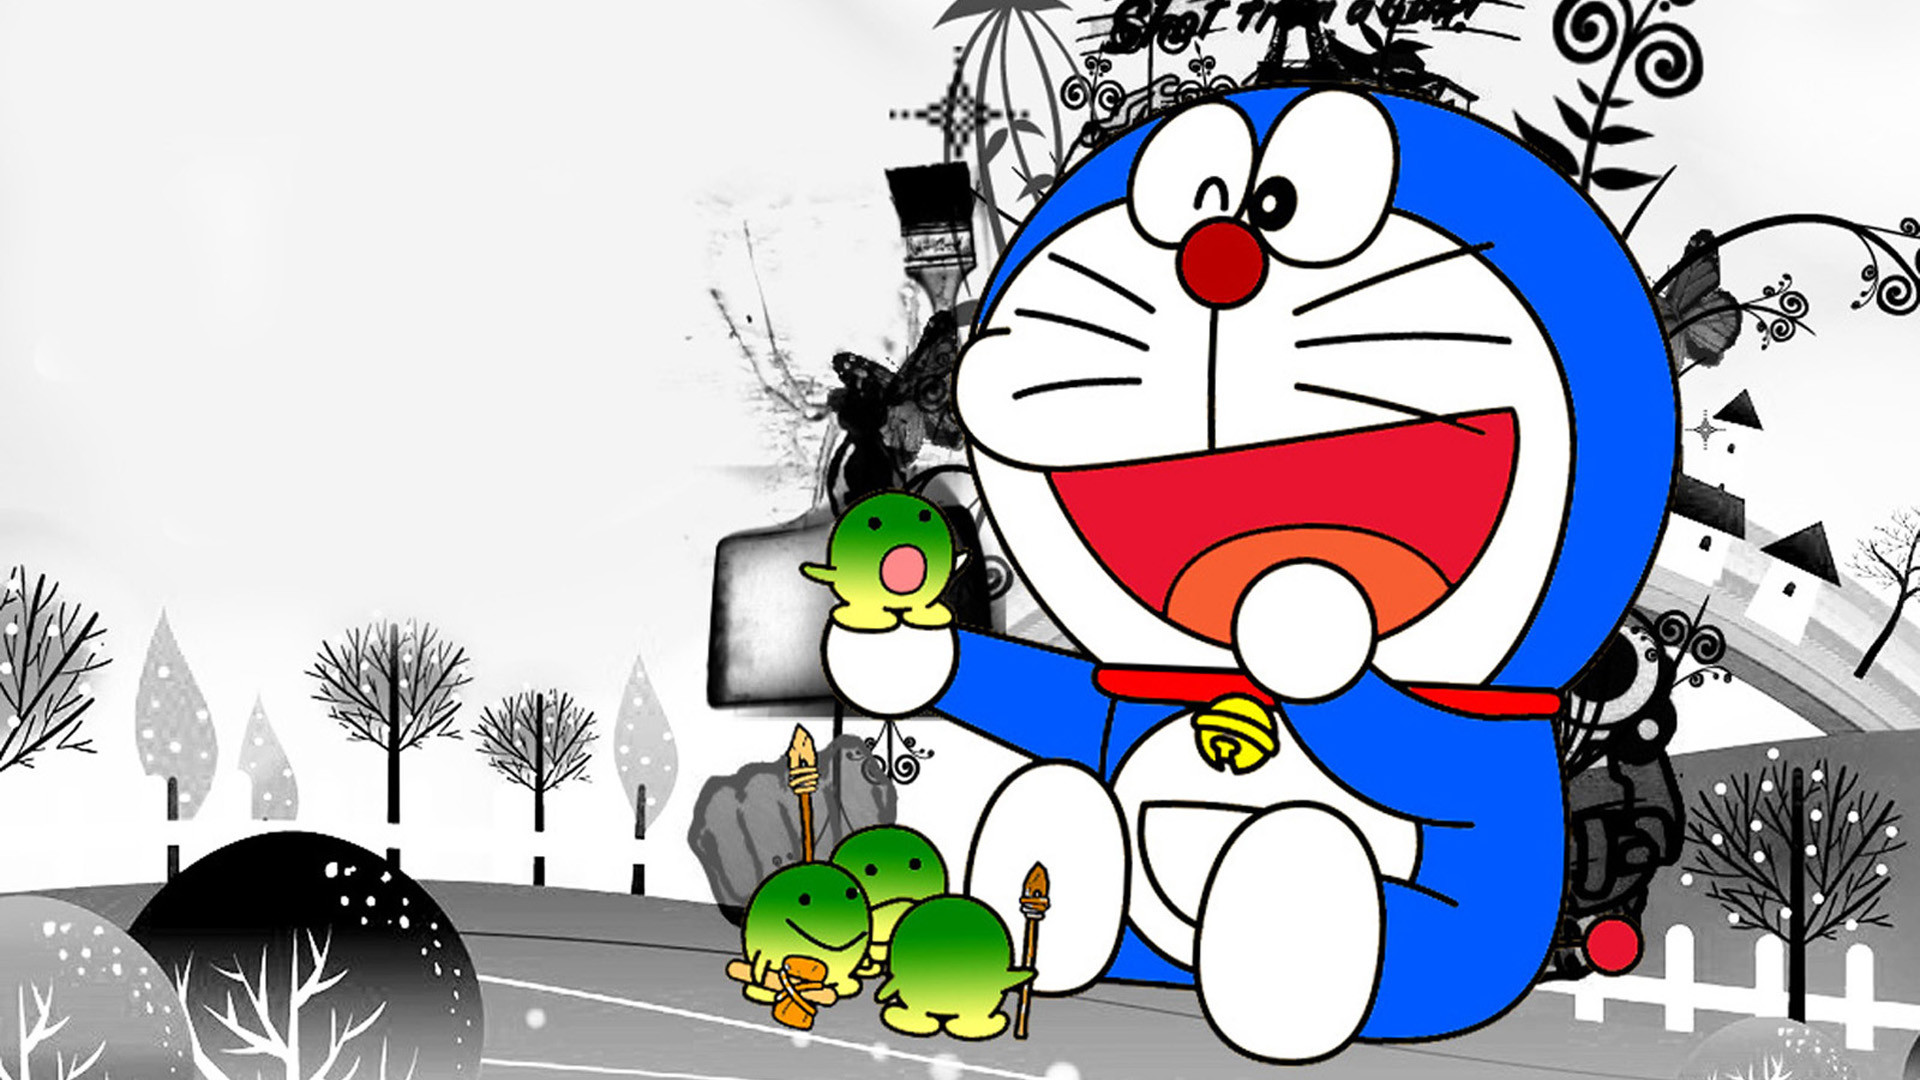 Những hình nền Doraemon và bạn bè sẽ khiến bạn được sống trong thế giới ngộ nghĩnh, đầy màu sắc của truyện tranh này. Hình ảnh này sẽ đem đến cho bạn cảm giác thư giãn sau những giờ làm việc căng thẳng.